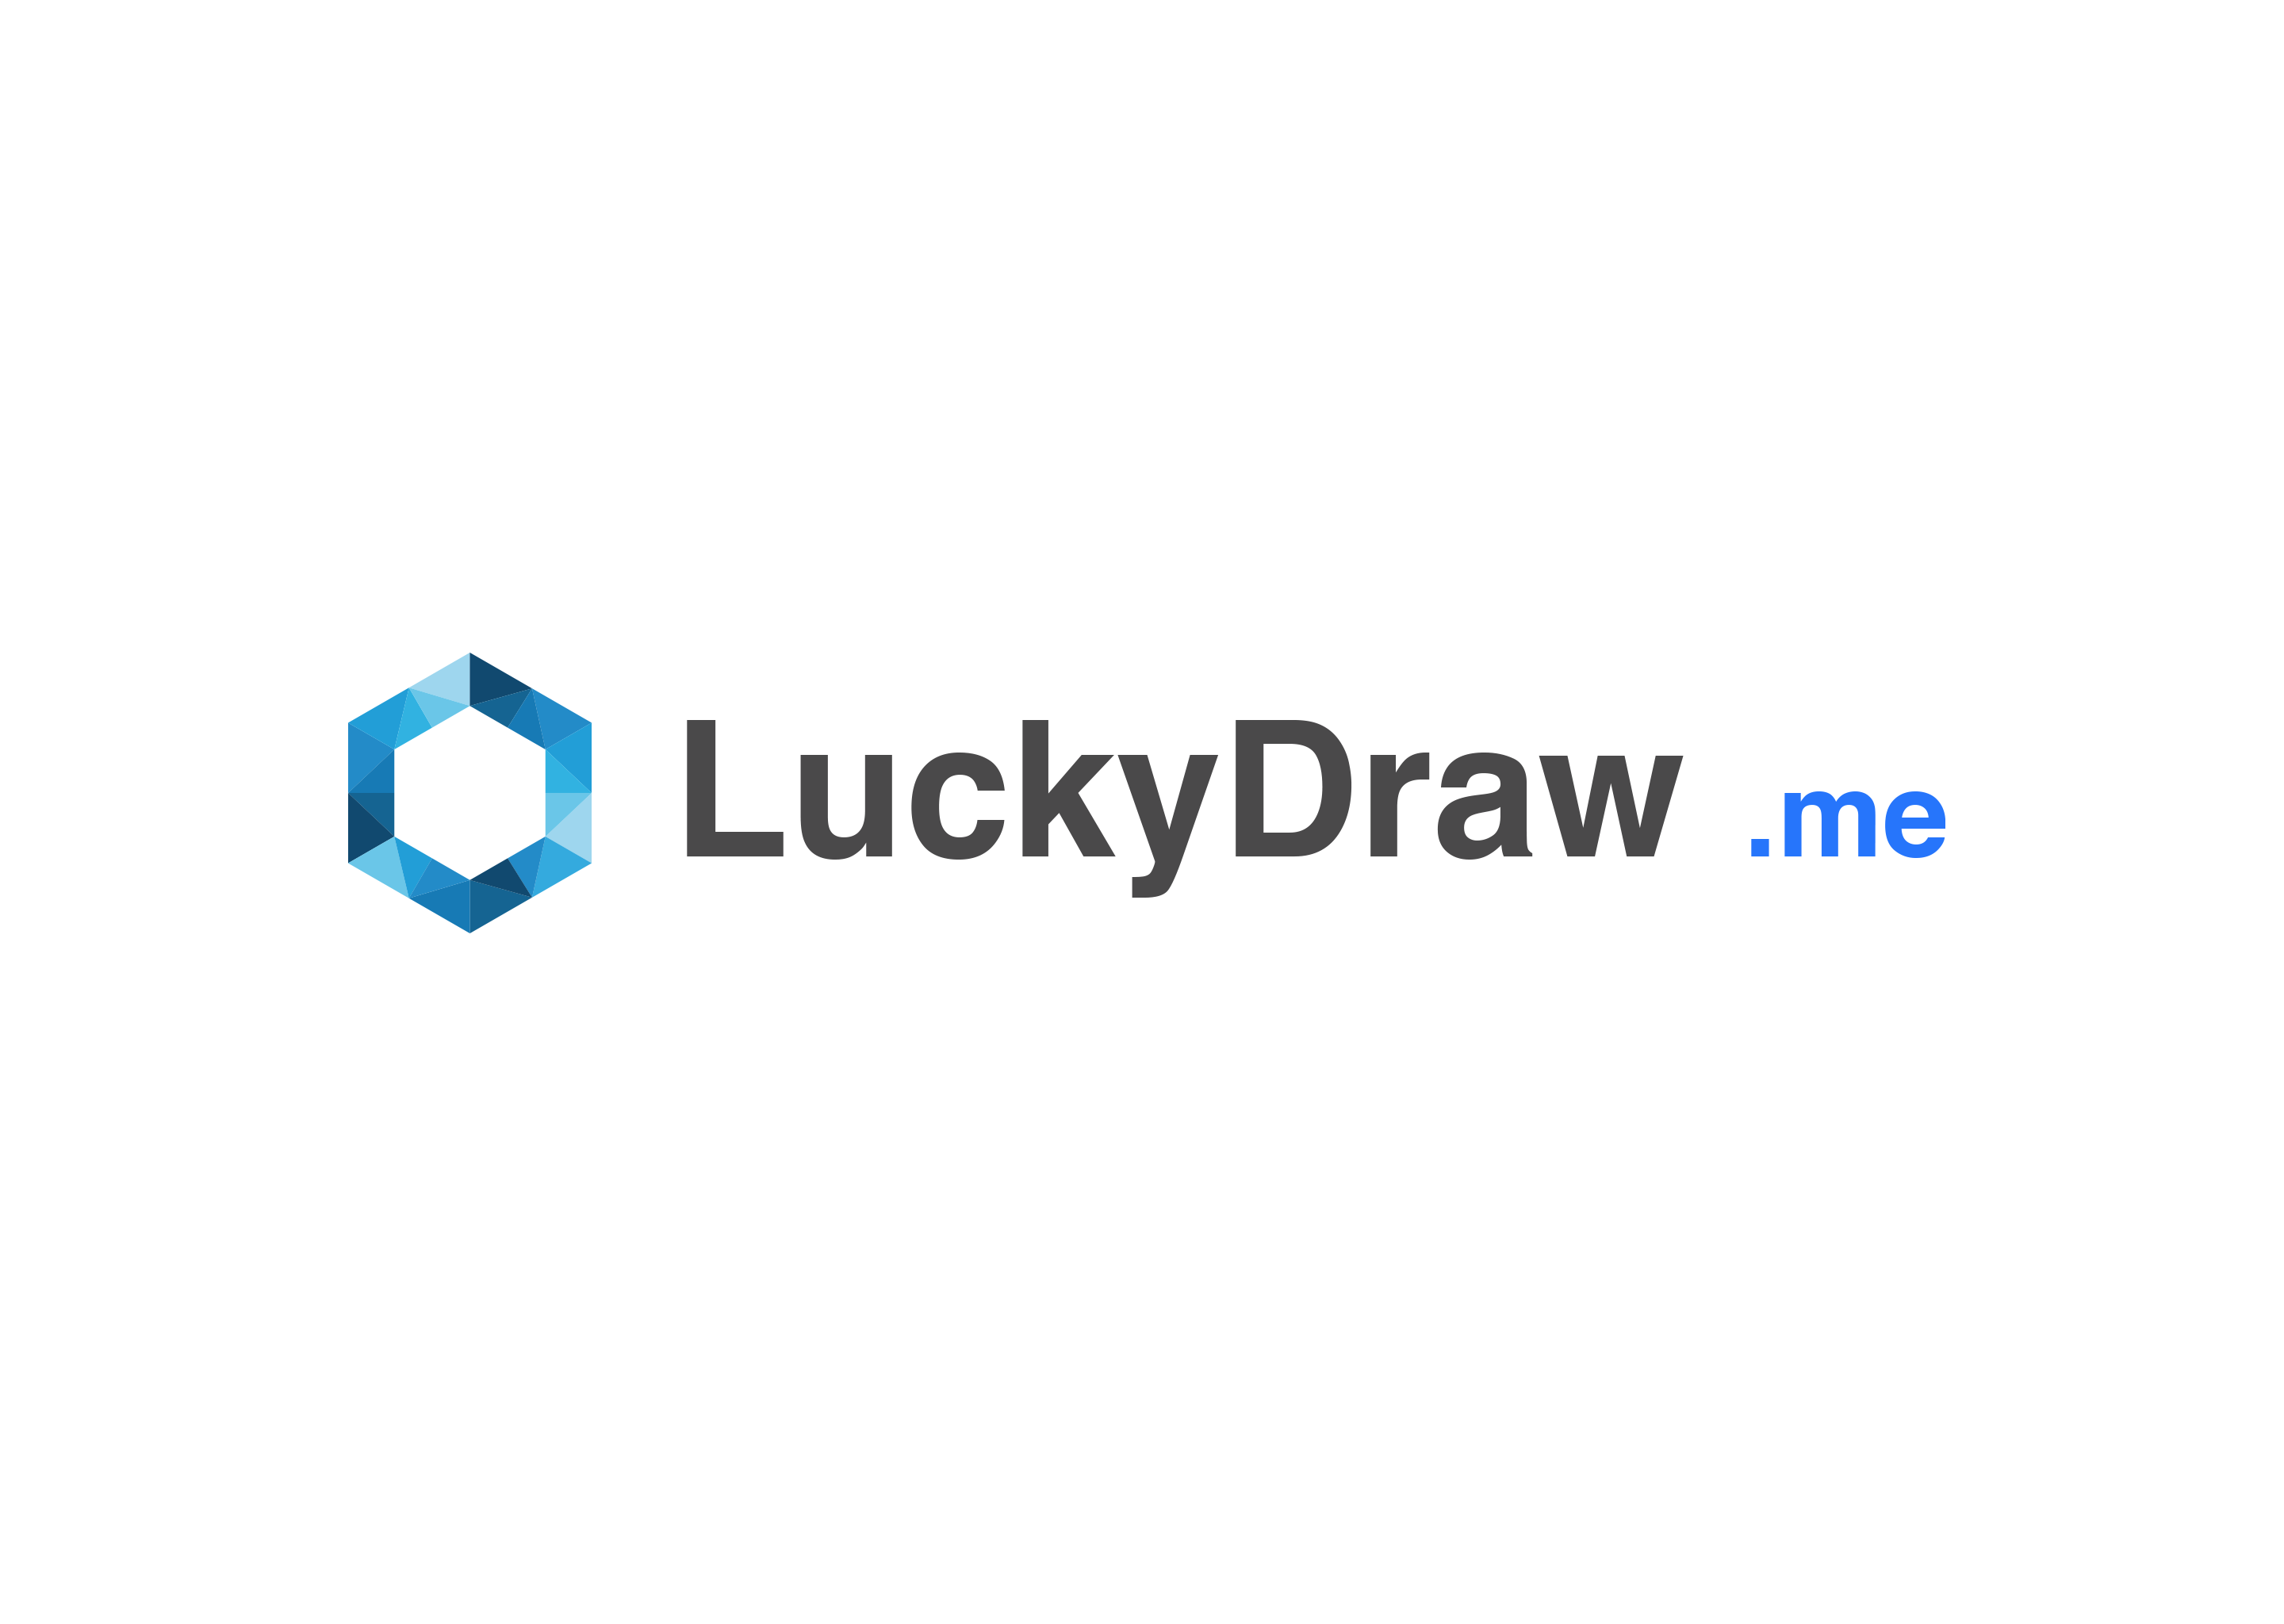 91-8967903542 Flip kart lucky draw 2020 by onlineluckydrawindia - Issuu-saigonsouth.com.vn